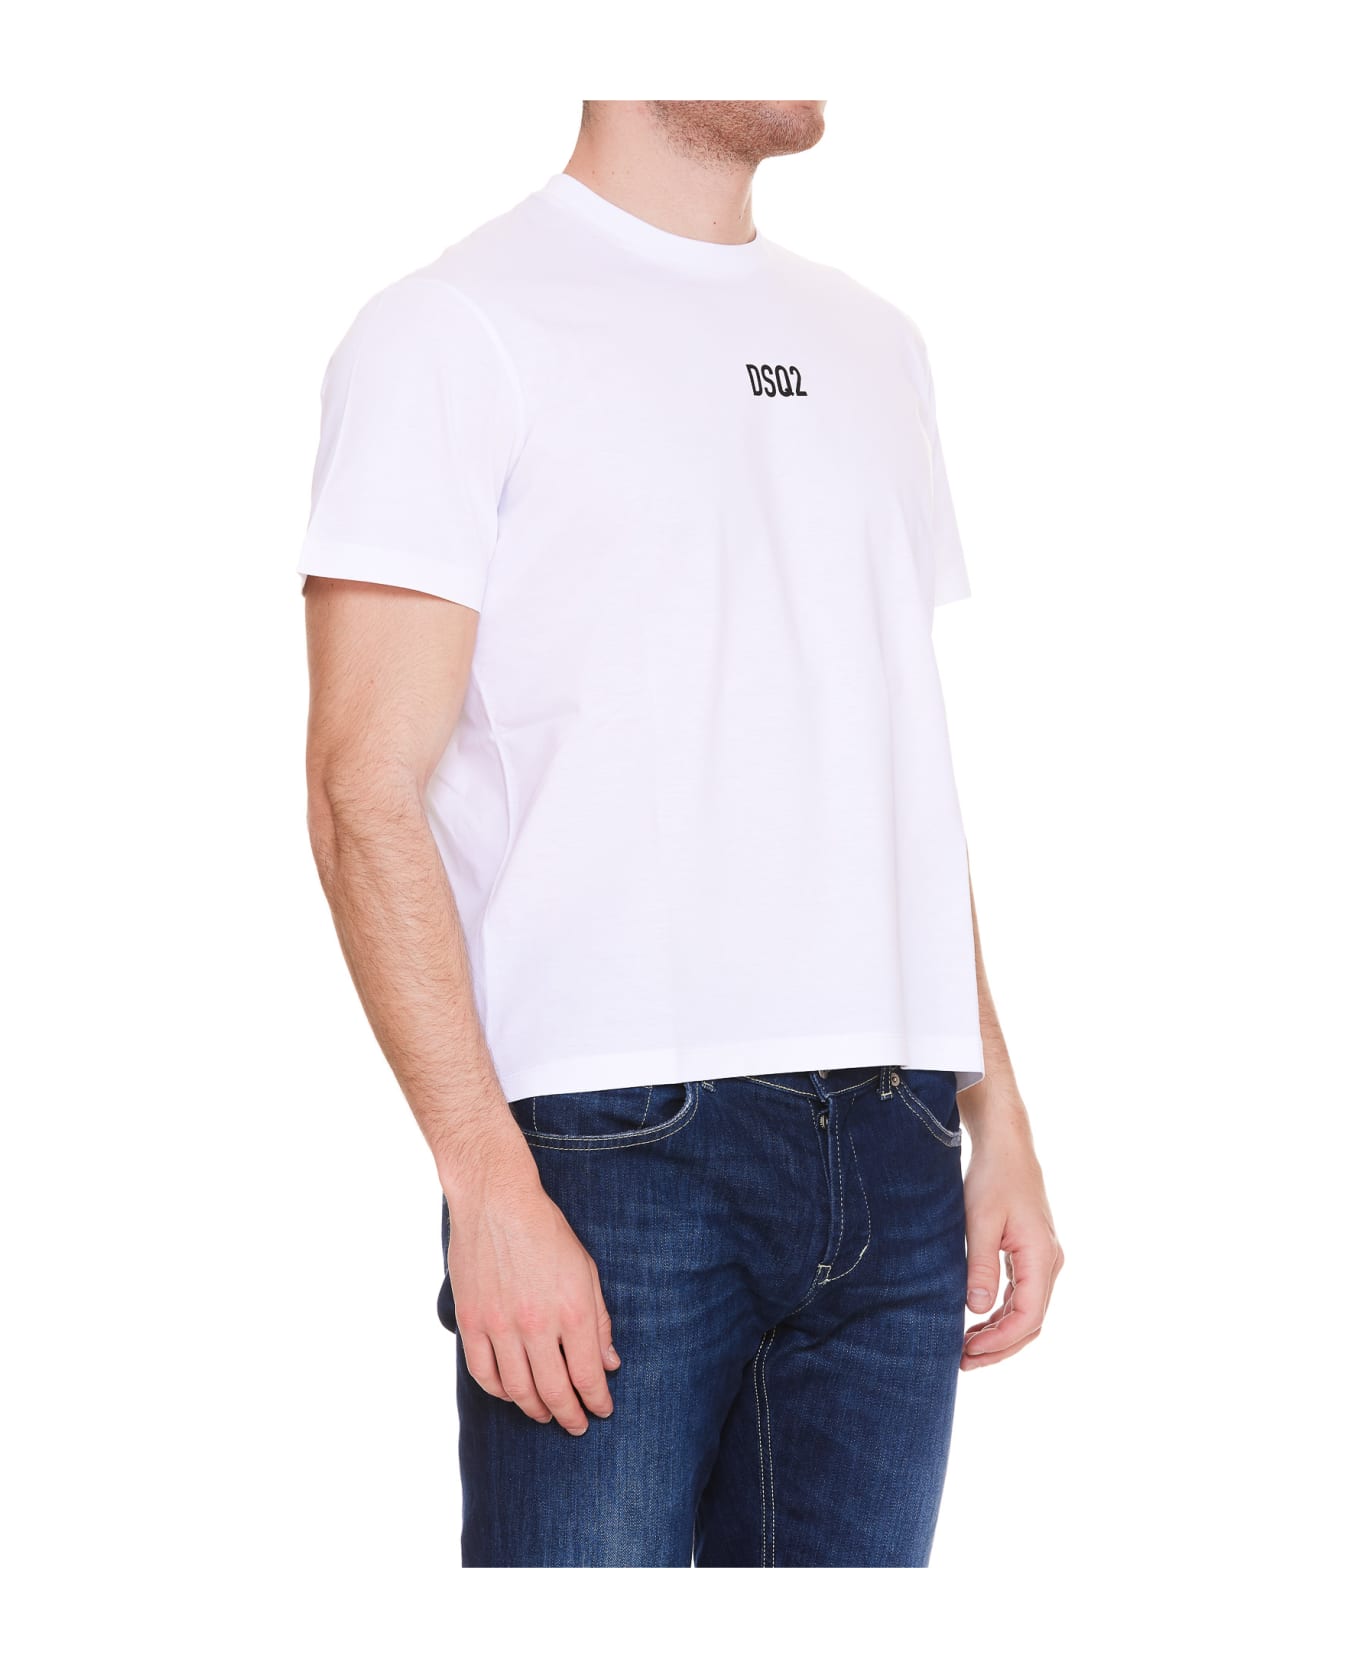 Dsquared2 Dsq2 Logo T-shirt - WHITE